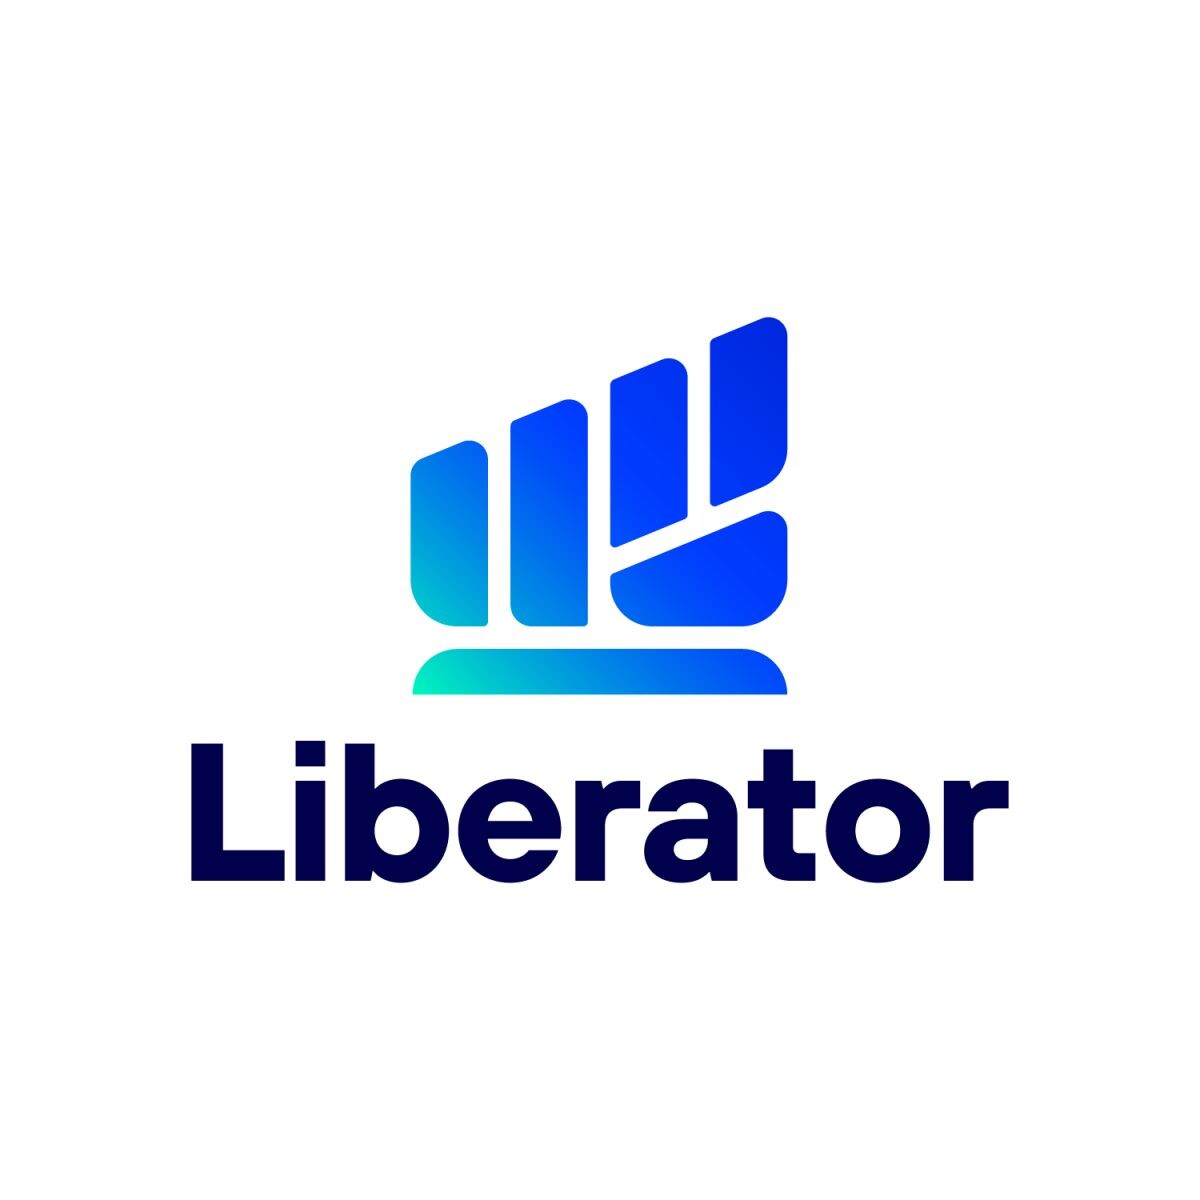 ฤกษ์ดี! บล. Liberator ลงสนามเต็มกำลังเปิดตัวแพลตฟอร์ม เทรดหุ้นฟรี "ไม่มีค่าคอม"! ประกาศตั้งเป้ากวาดนักลงทุนมากที่สุดในตลาด